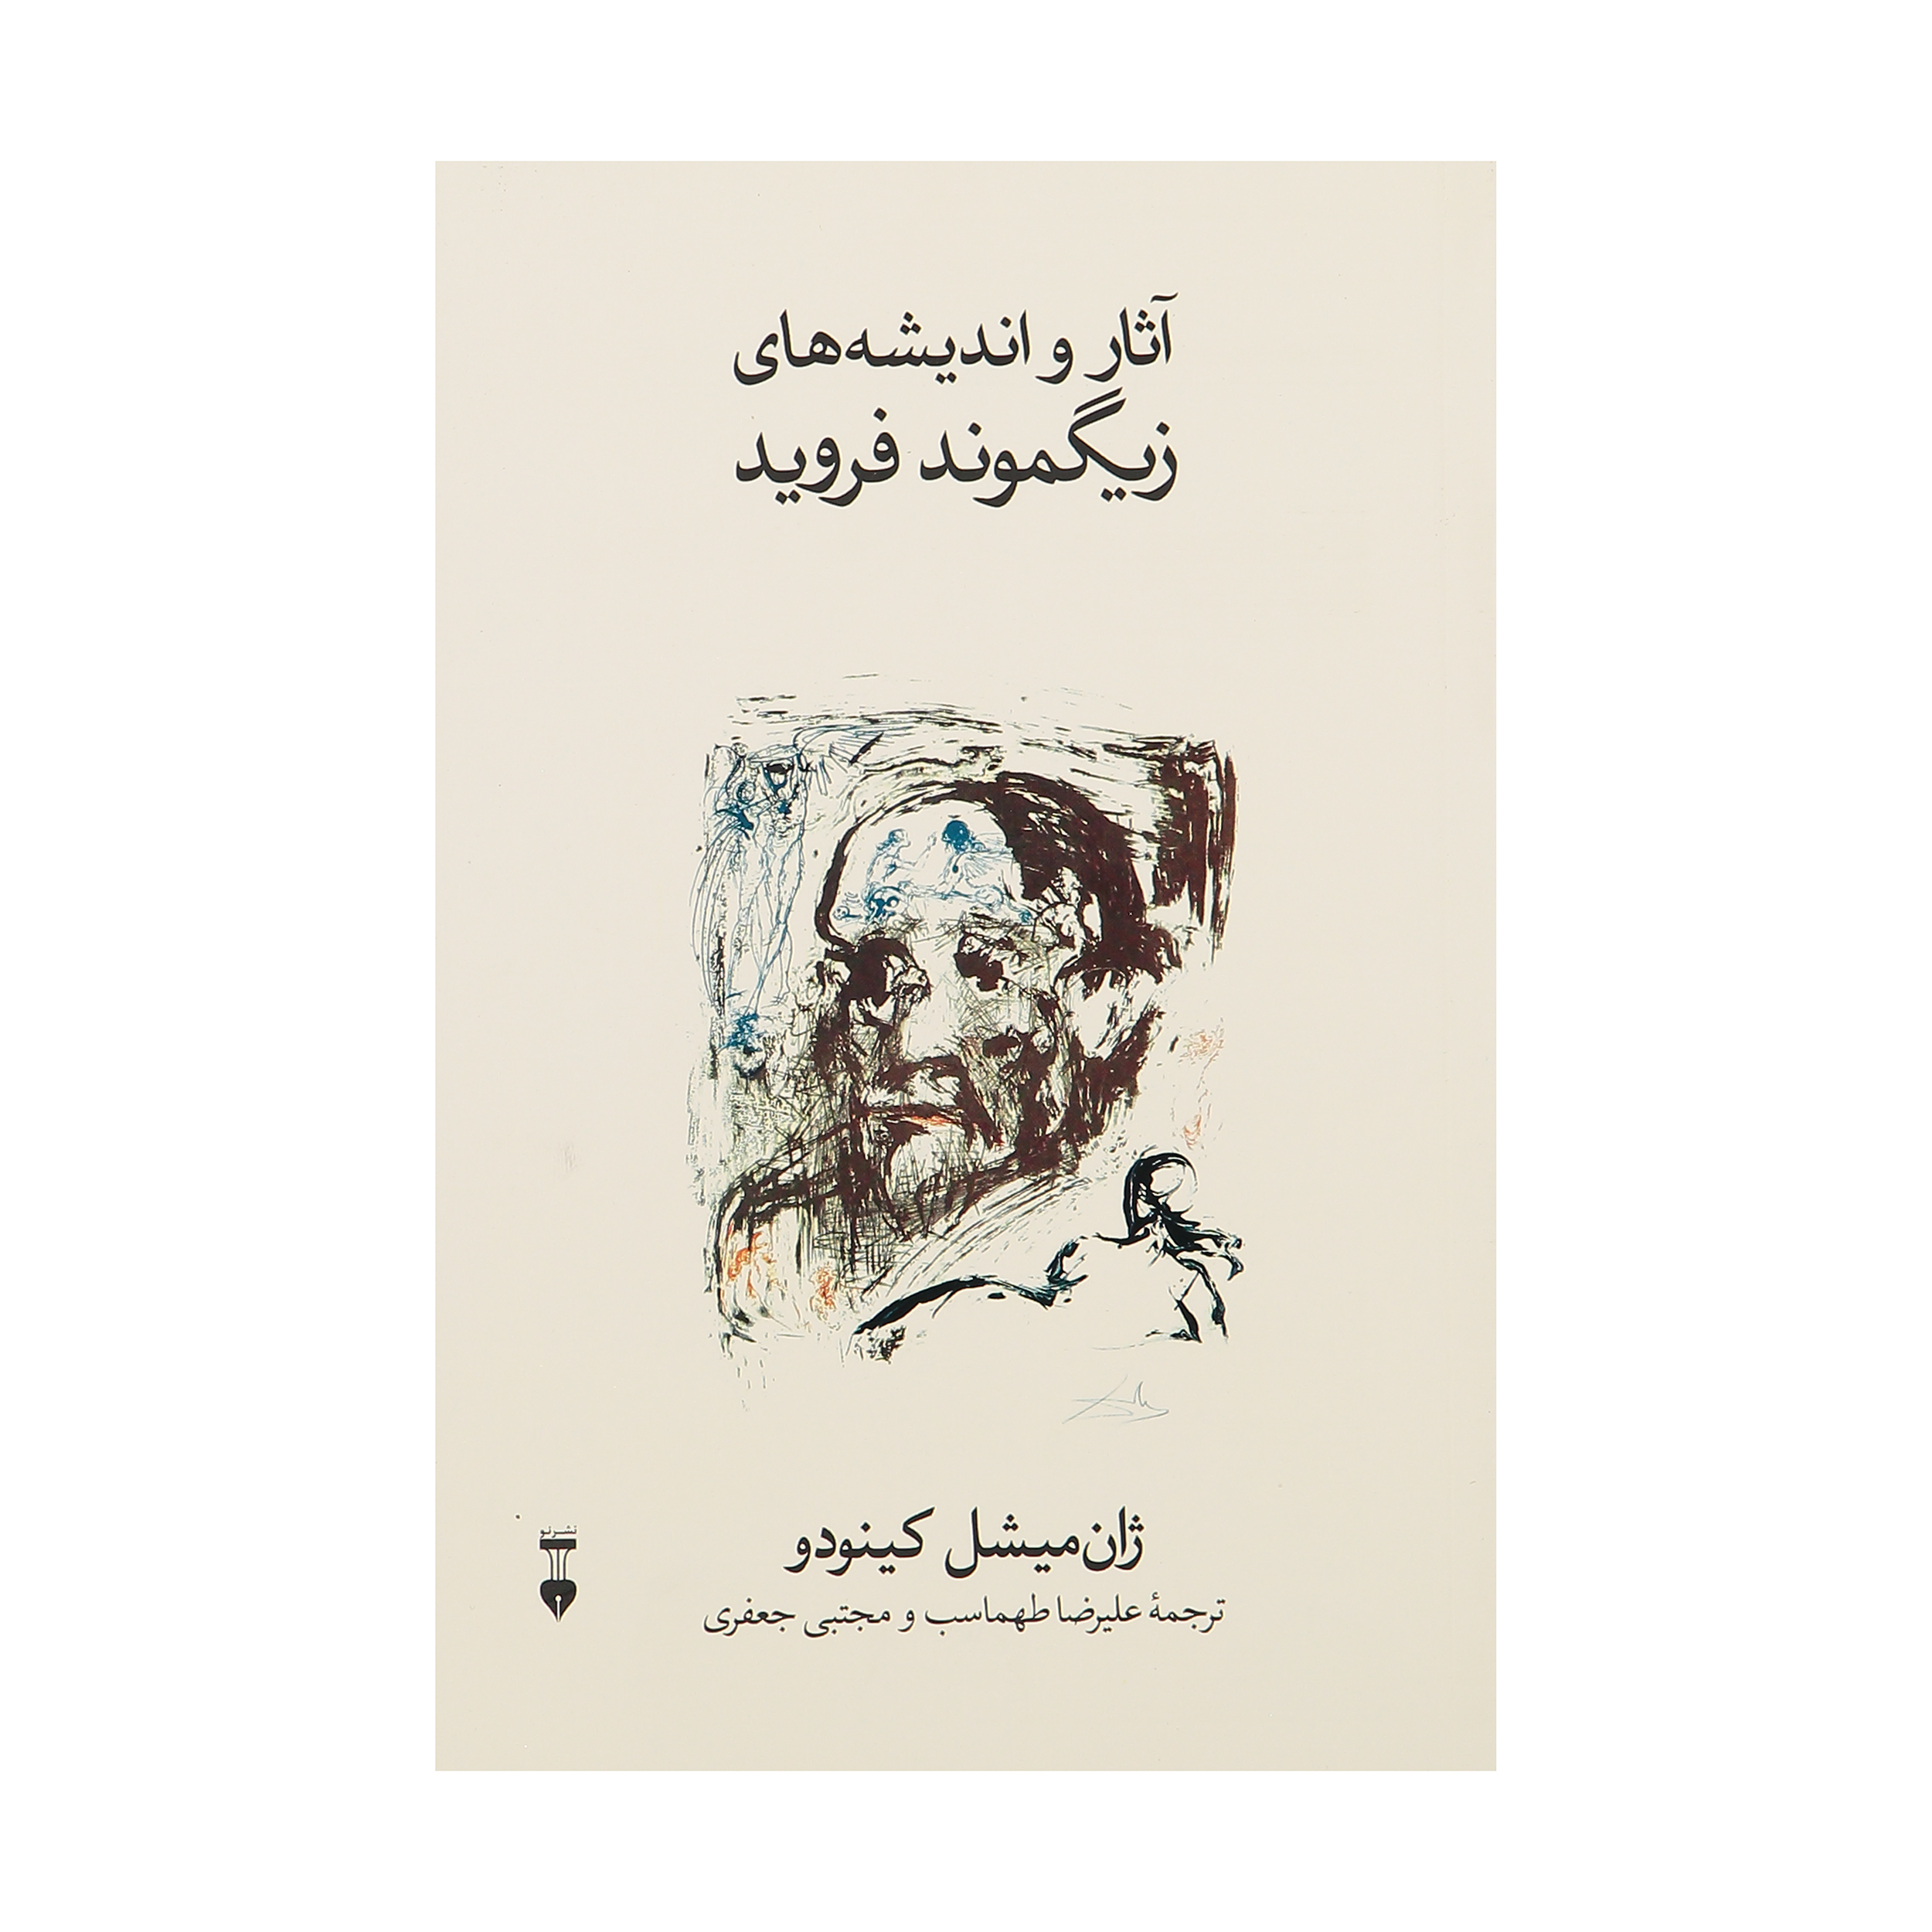 کتاب آثار و اندیشه های زیگموند فروید اثر ژان میشل کینودو نشر نو